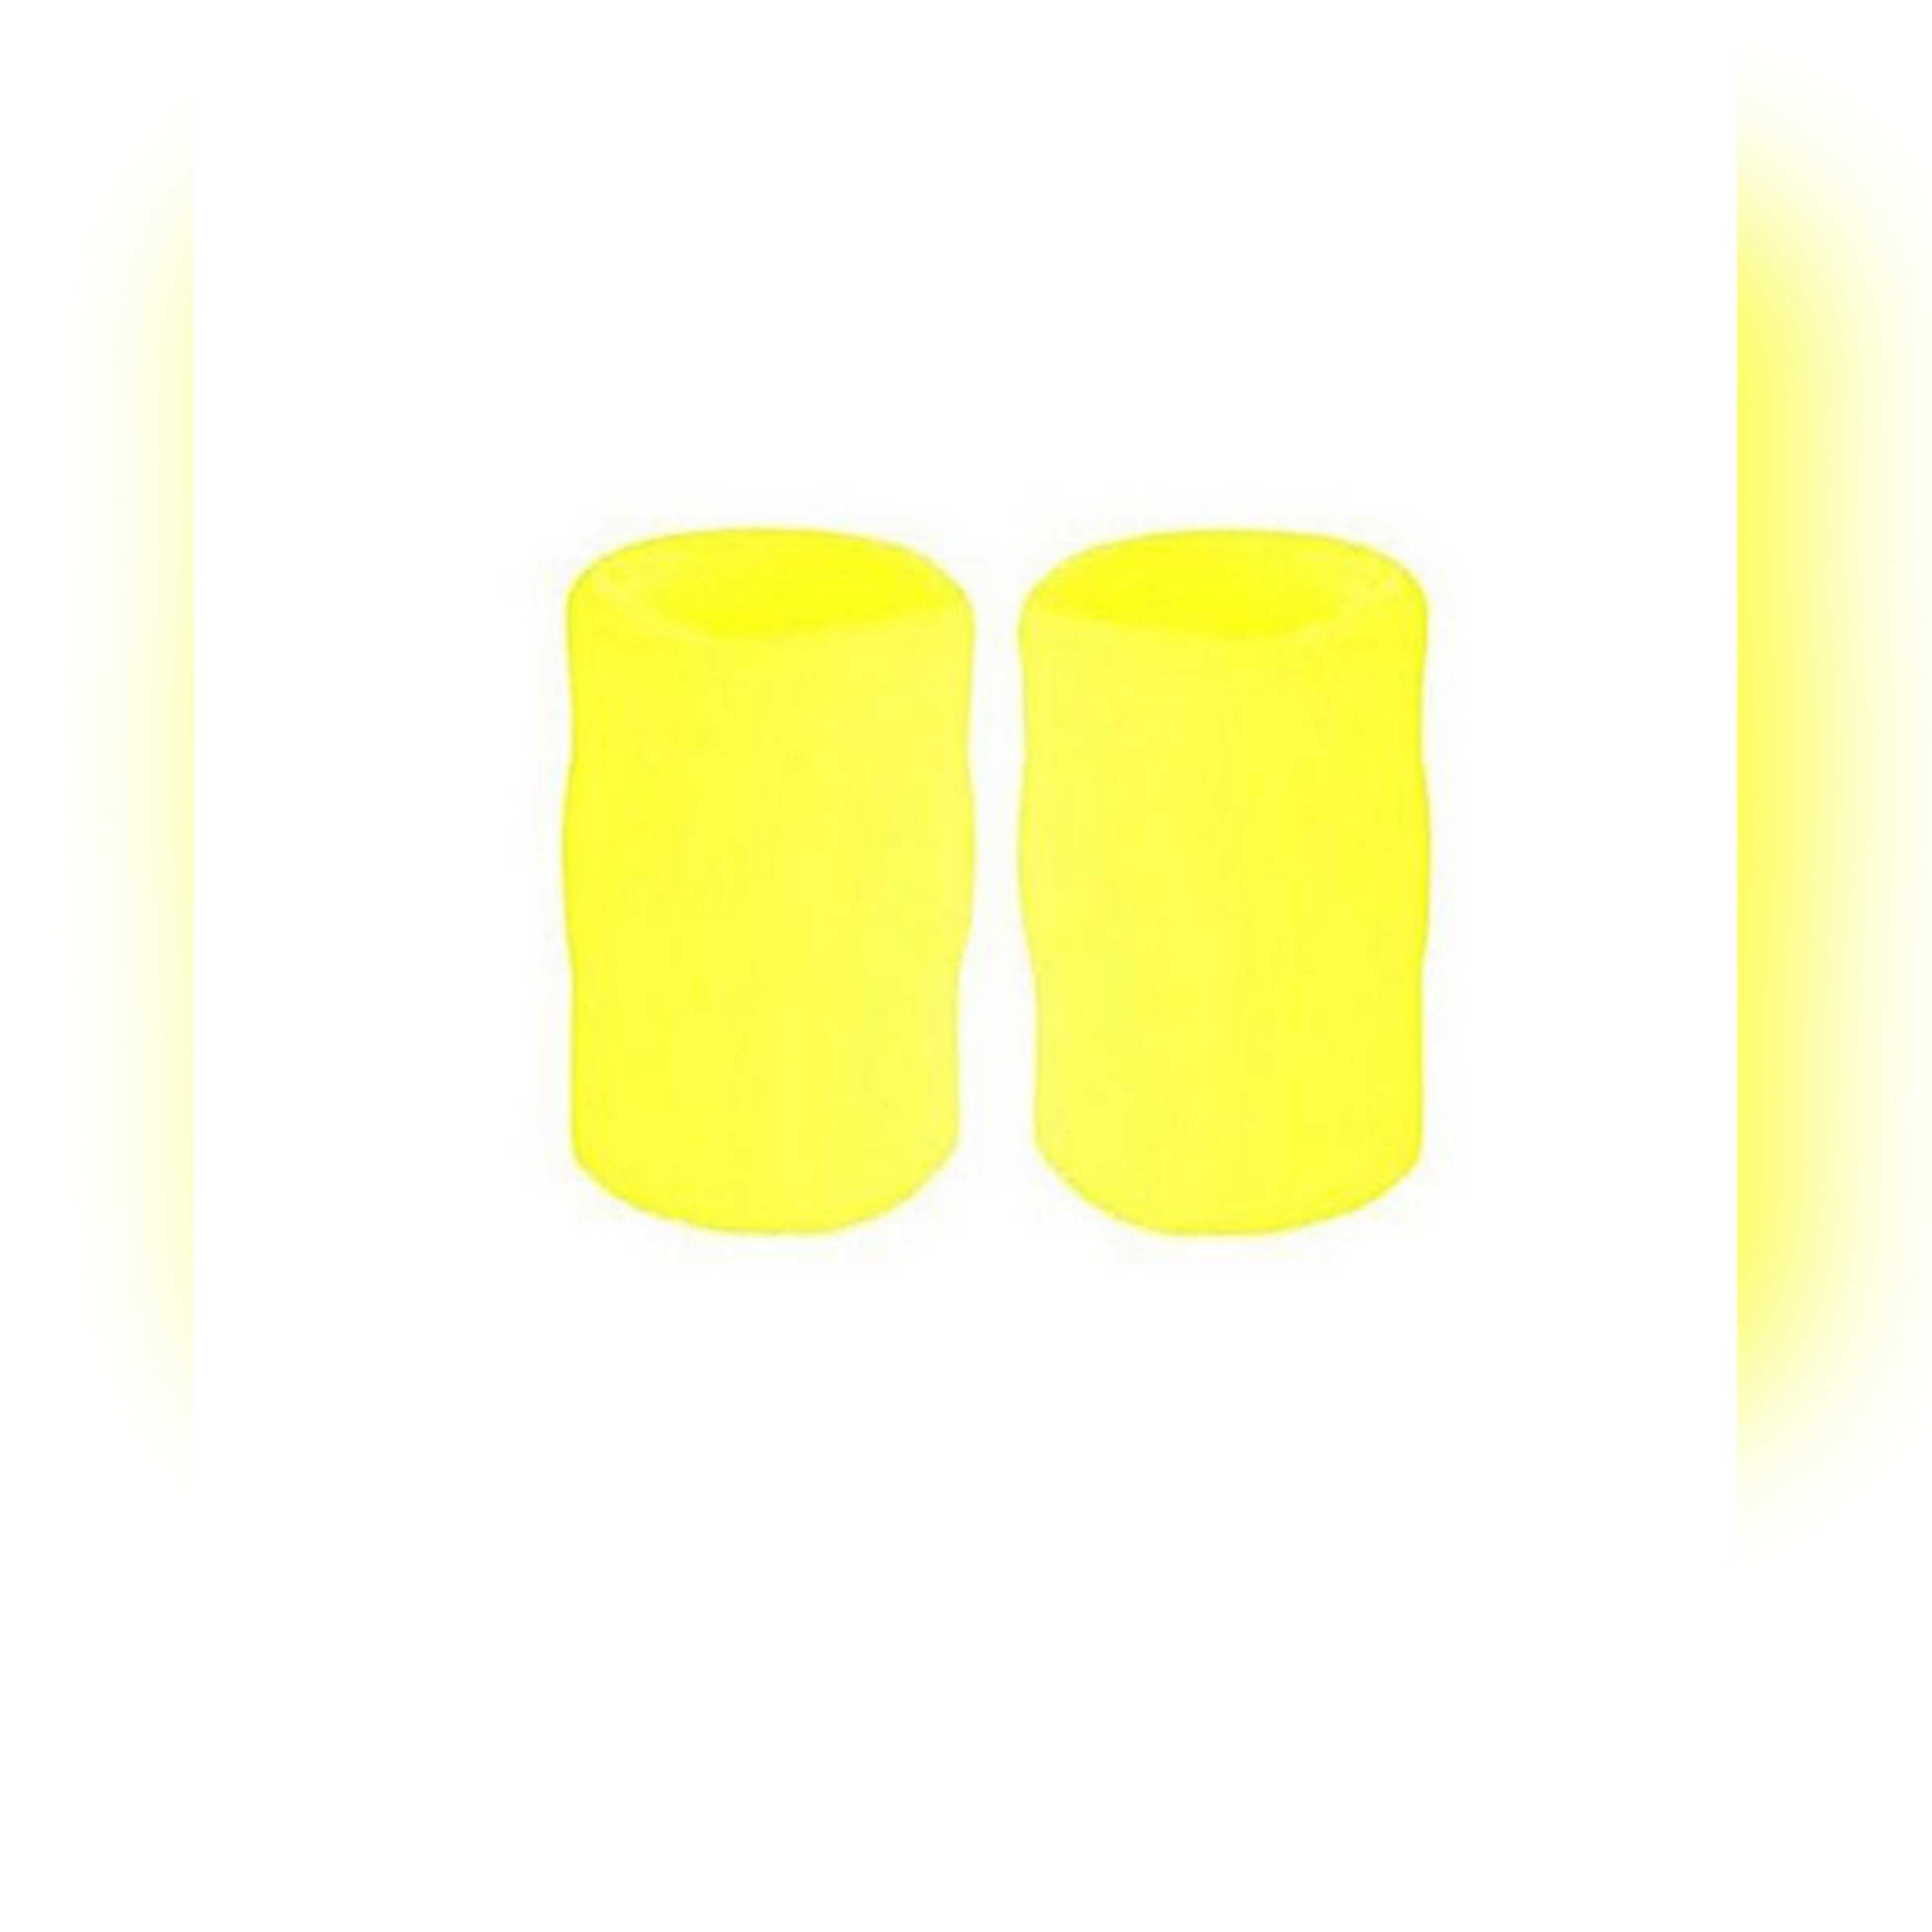 Pair of Wrist Band - Yellow